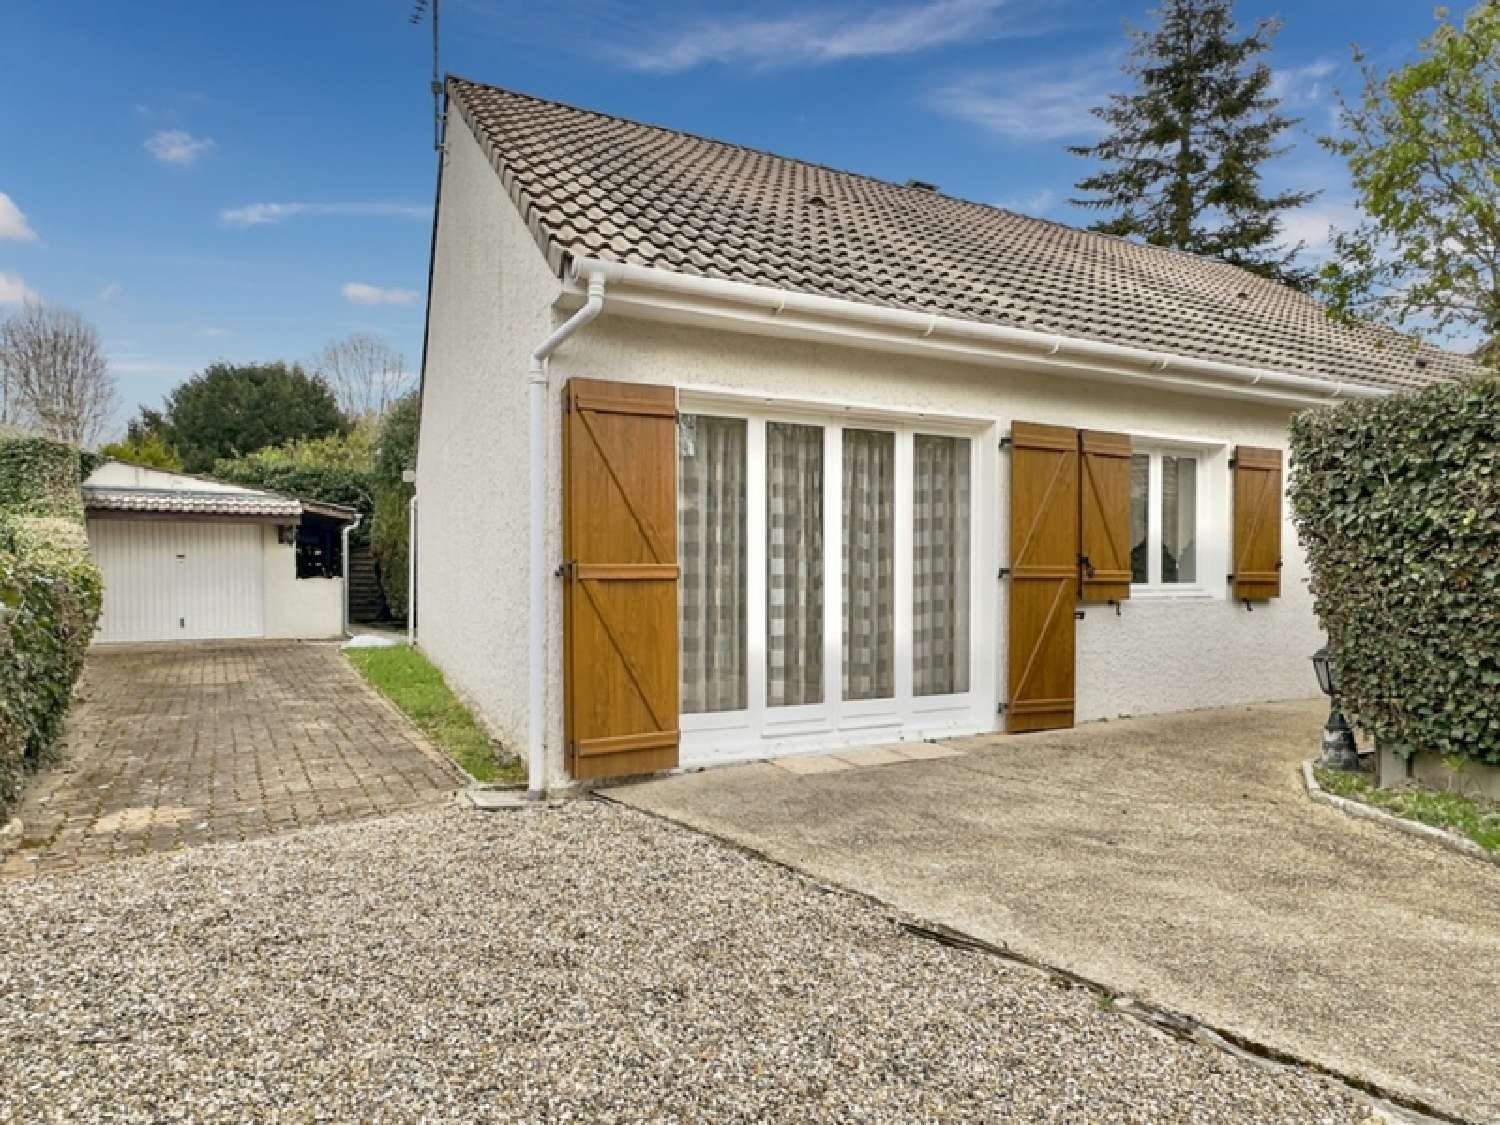  à vendre maison Aulnay-sur-Mauldre Yvelines 2